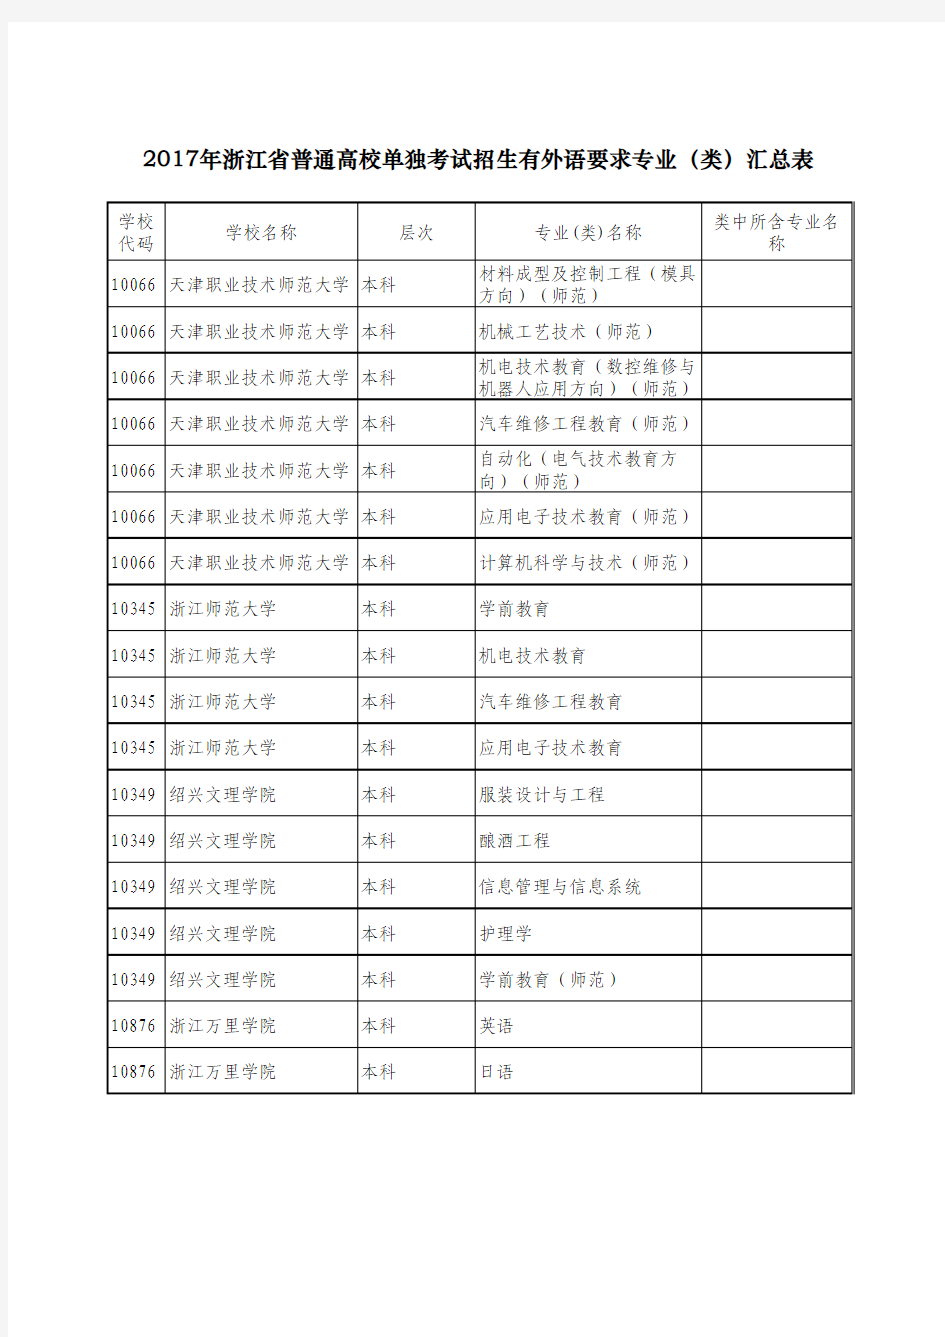 2017年浙江省普通高校单独考试招生有外语要求专业(类)汇总表